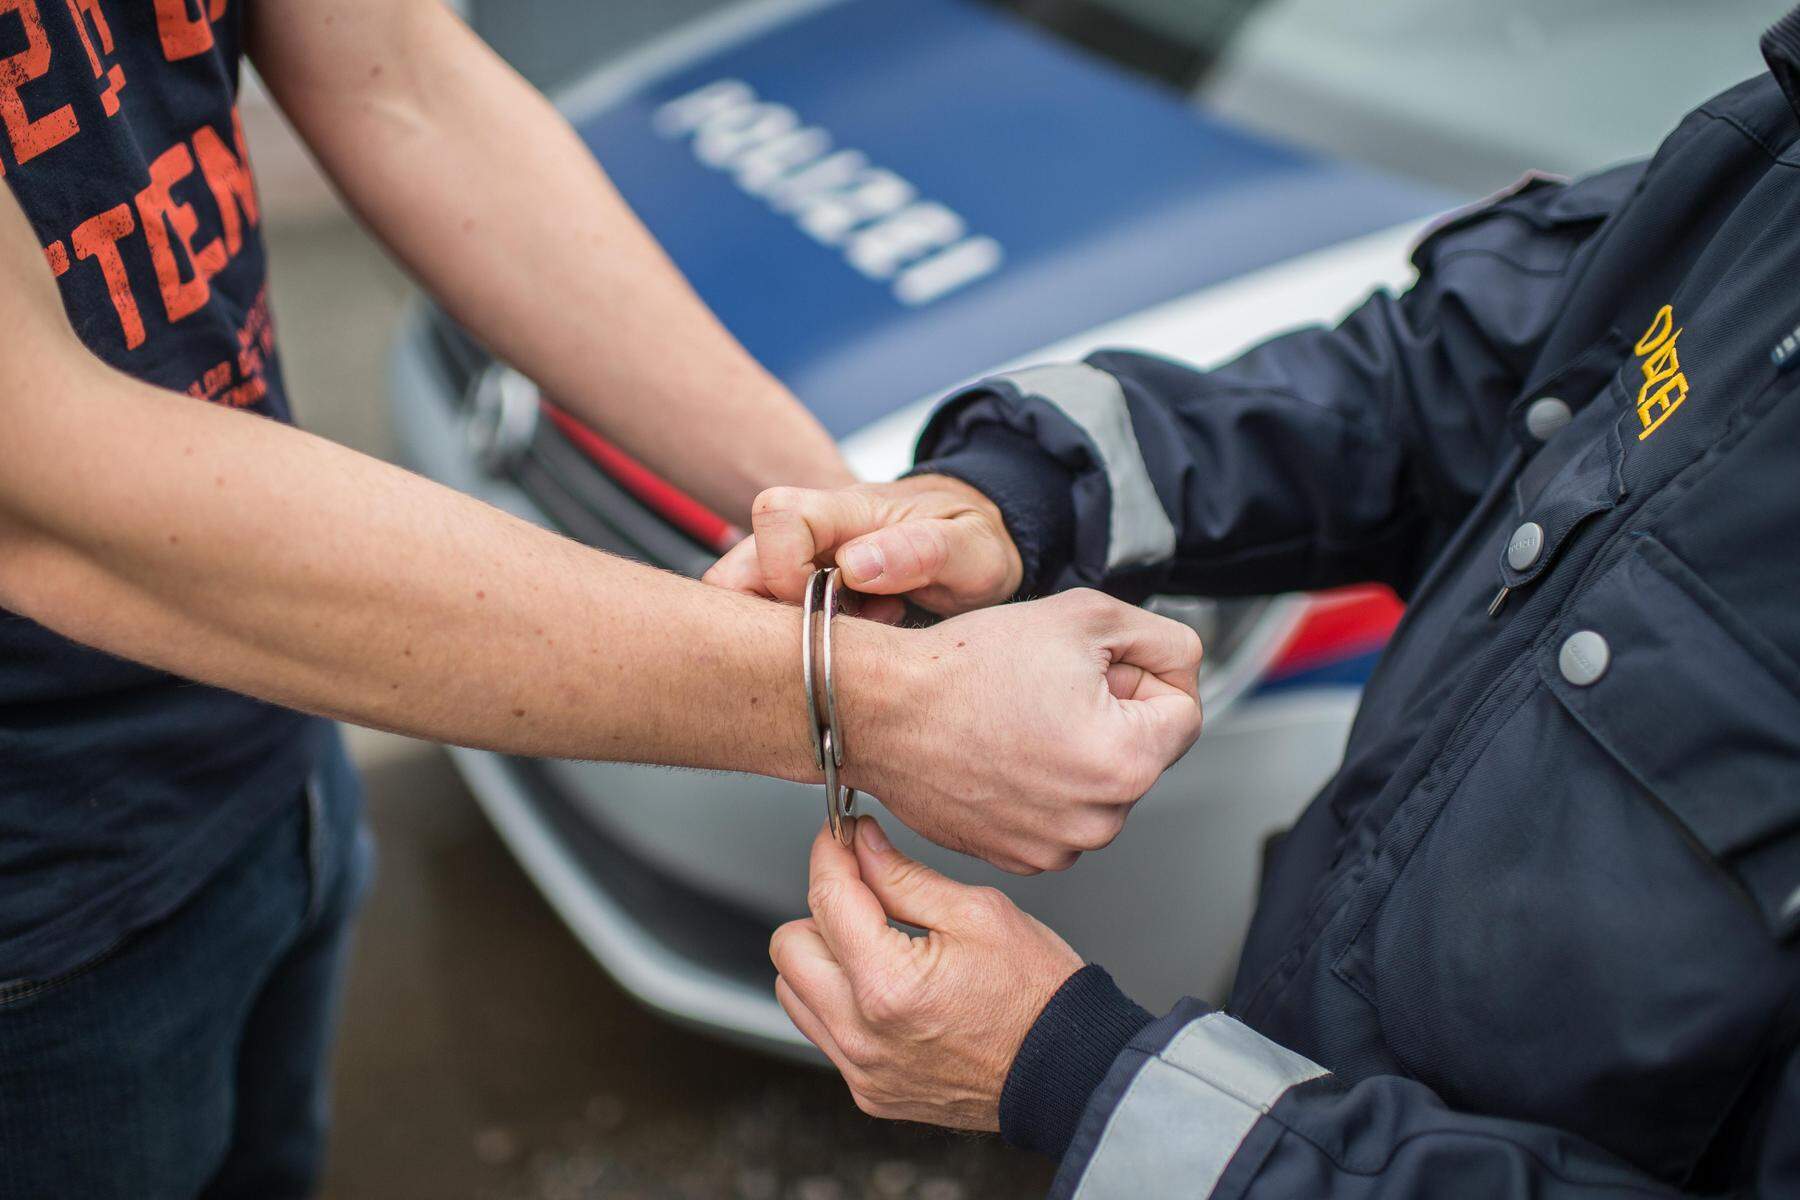 Fahndung in Kärnten: Heroin-Lenker mit Waffe im Auto auf Supermarkt-Parkplatz festgenommen